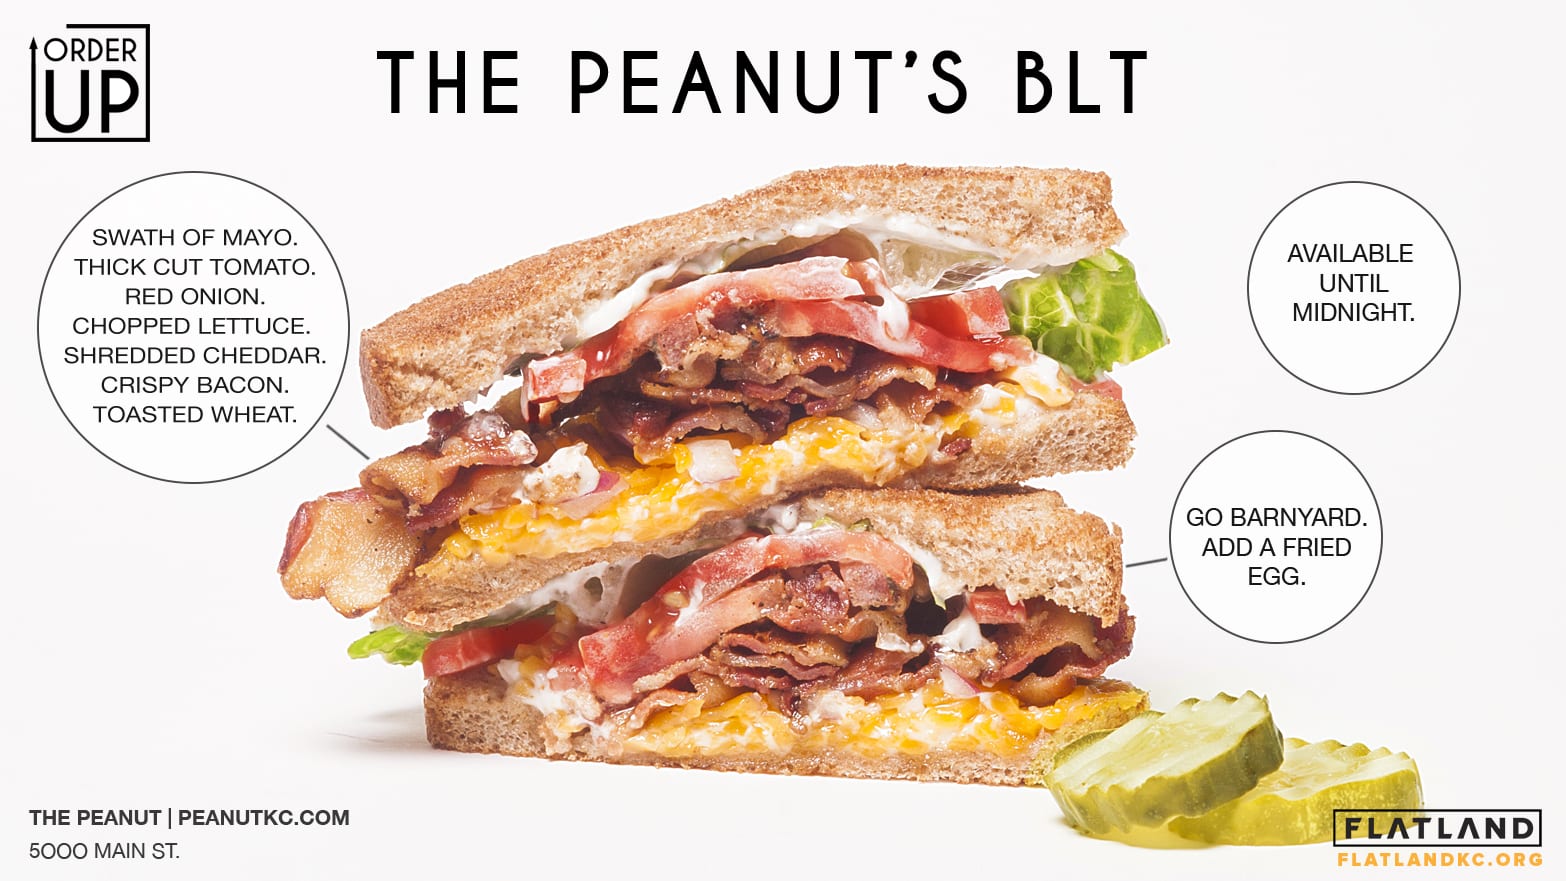 A picture of a BLT sandwich